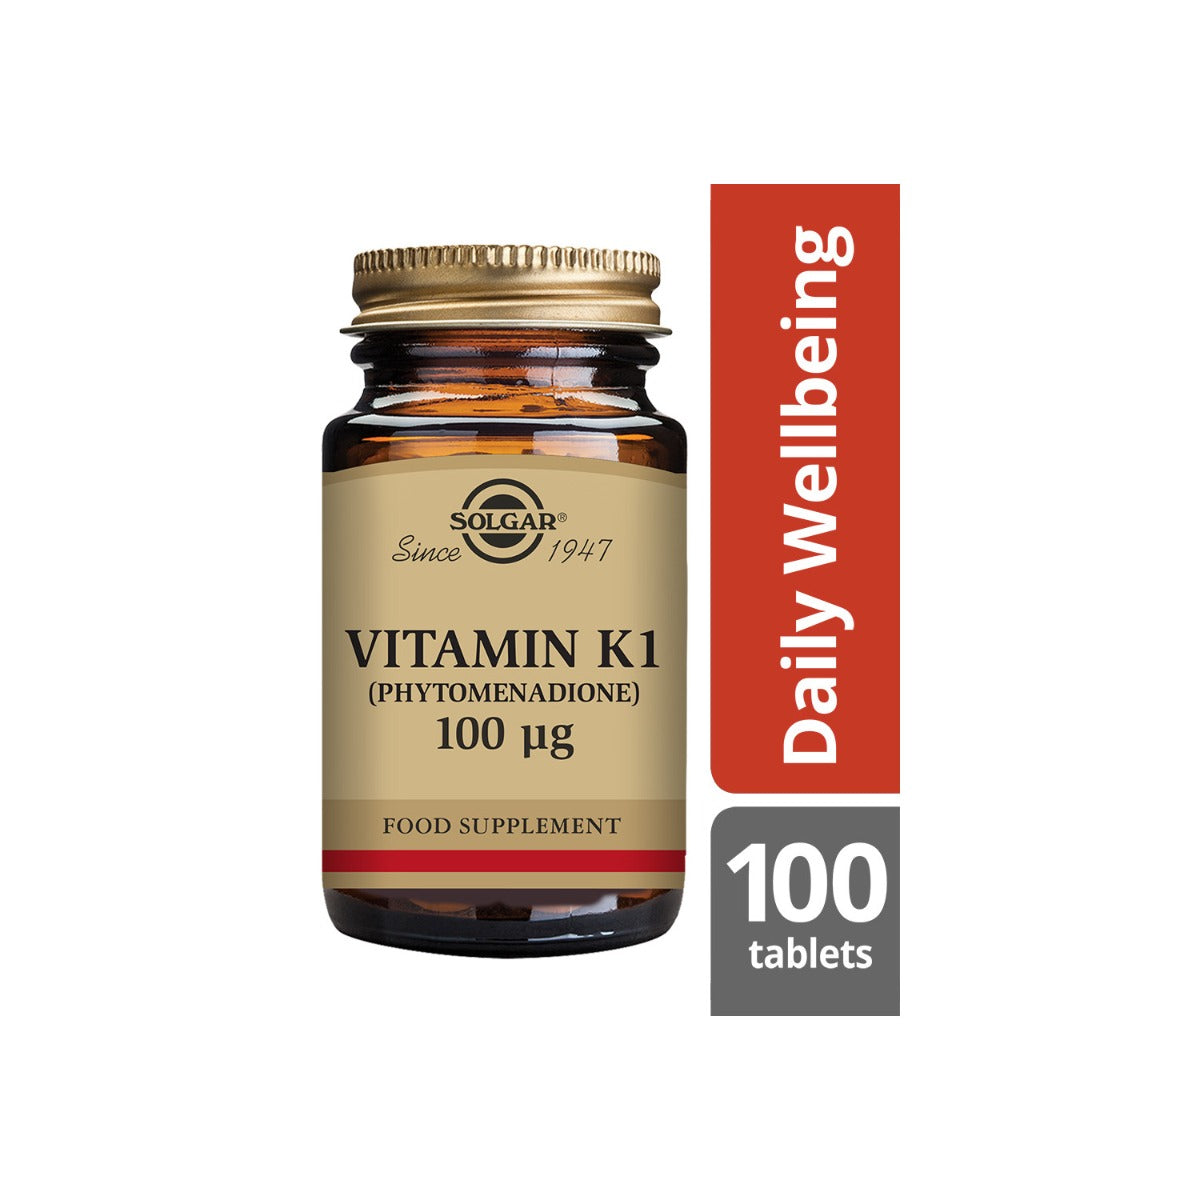 Solgar® Vitamin K1 (Phytomenadione) 100 µg Tablets - Pack of 100